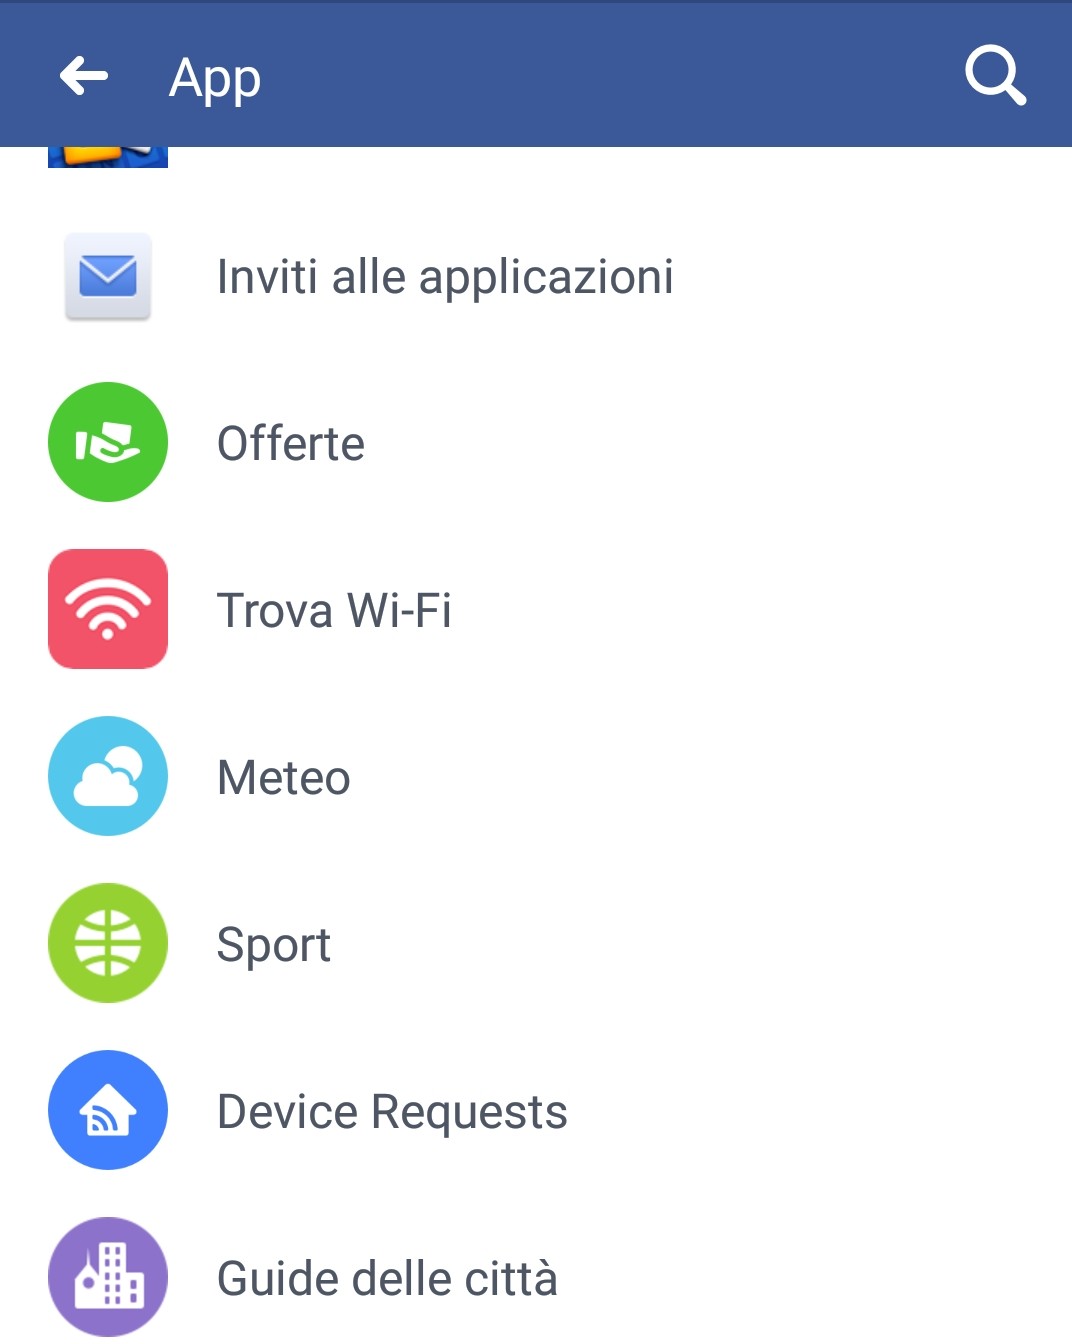 App funzioni Facebook nascoste